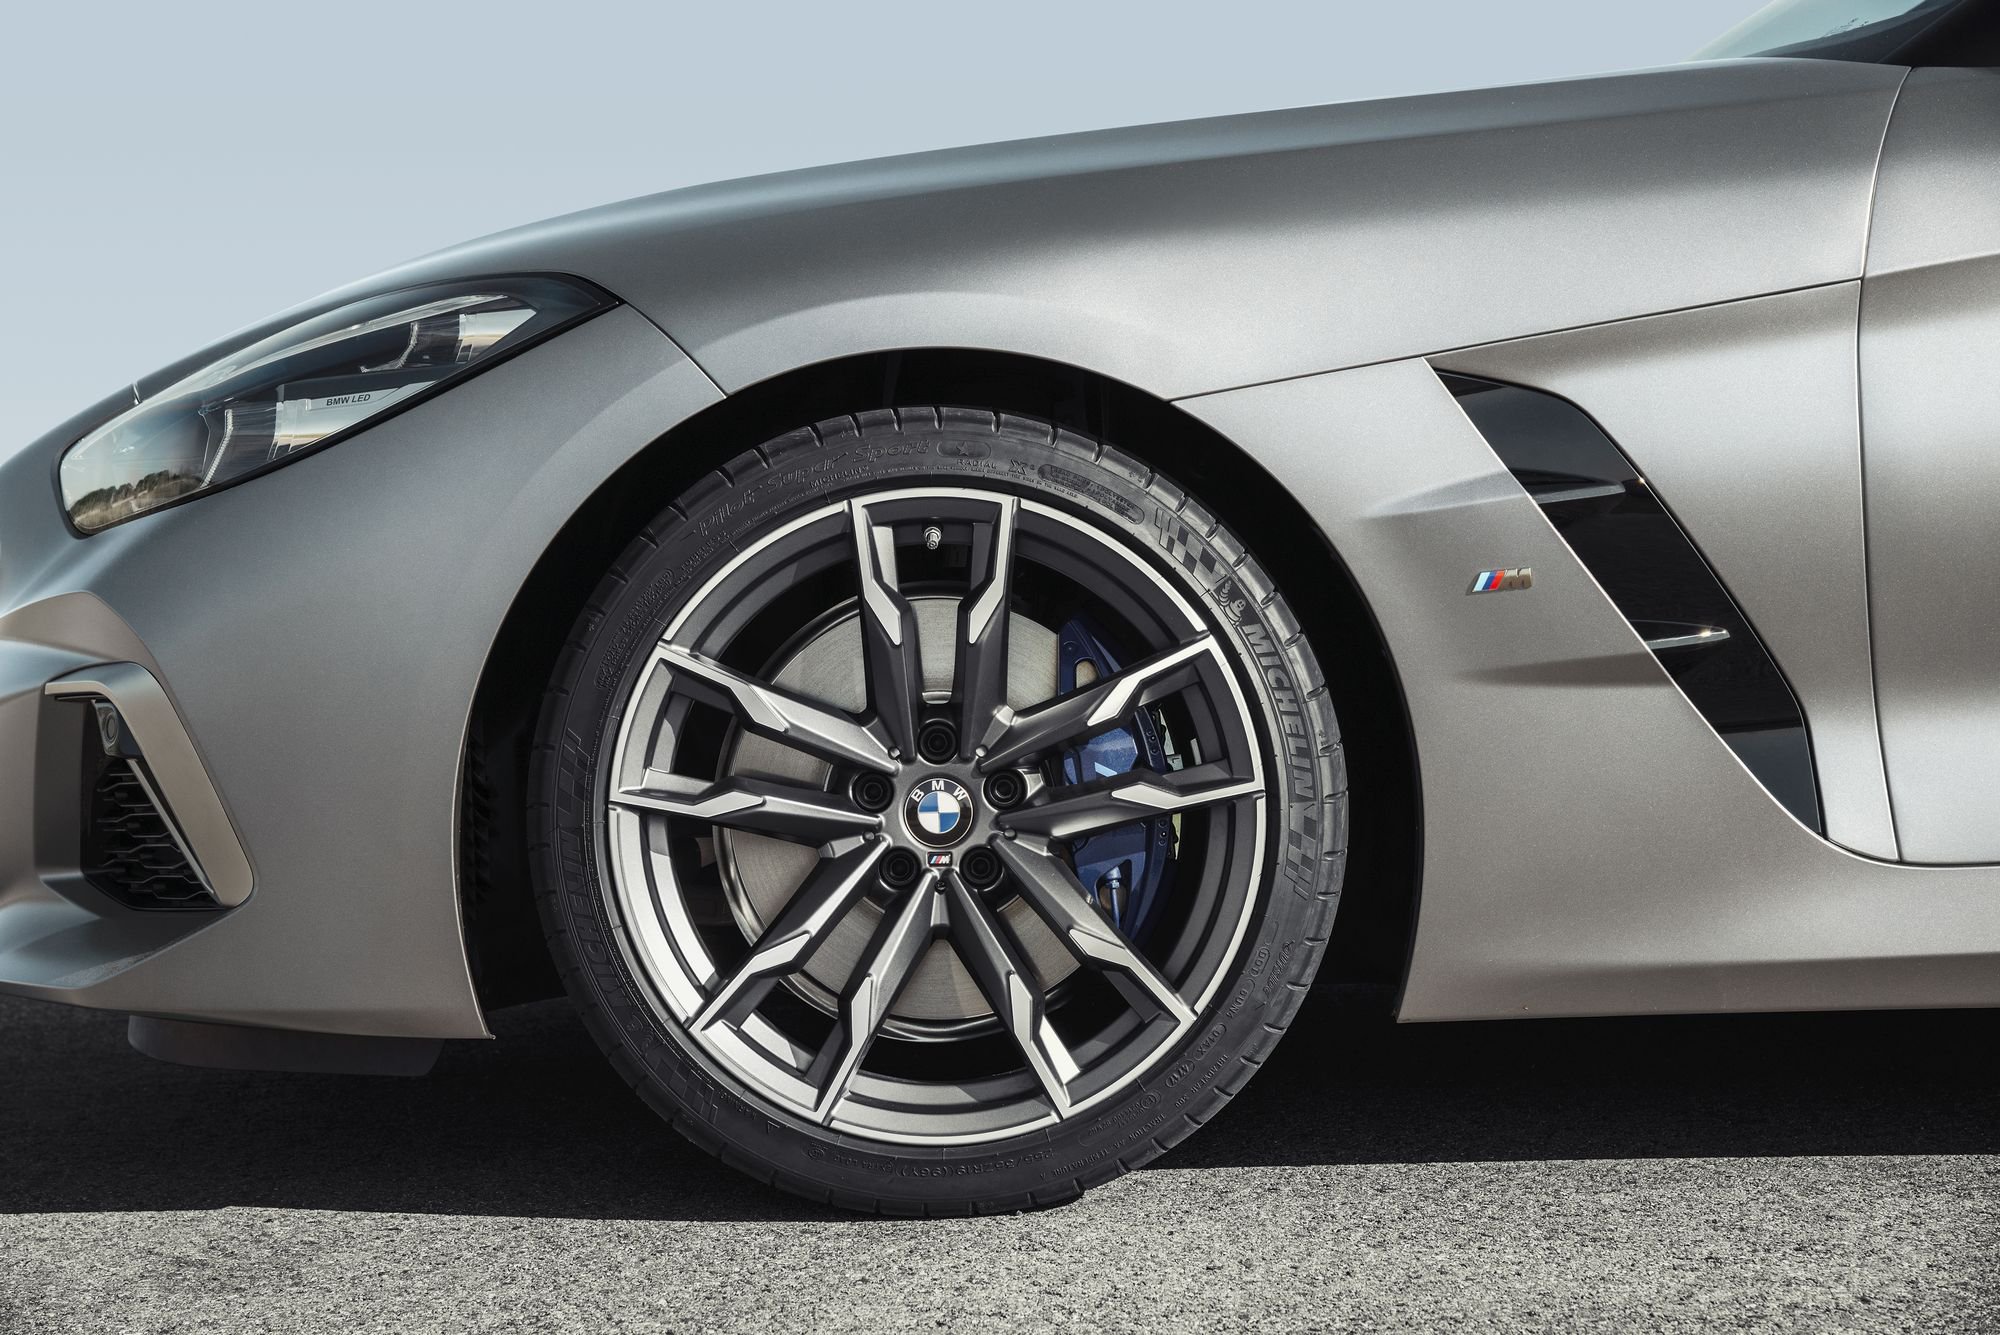 2019 BMW Z4 9 - BMW 2019 Z4 sDrive wheel 4k - bmw z4 wheel background, bmw z4 wheel 4k, BMW Z4 wallpapers, bmw z4 2019 wheel view 4k